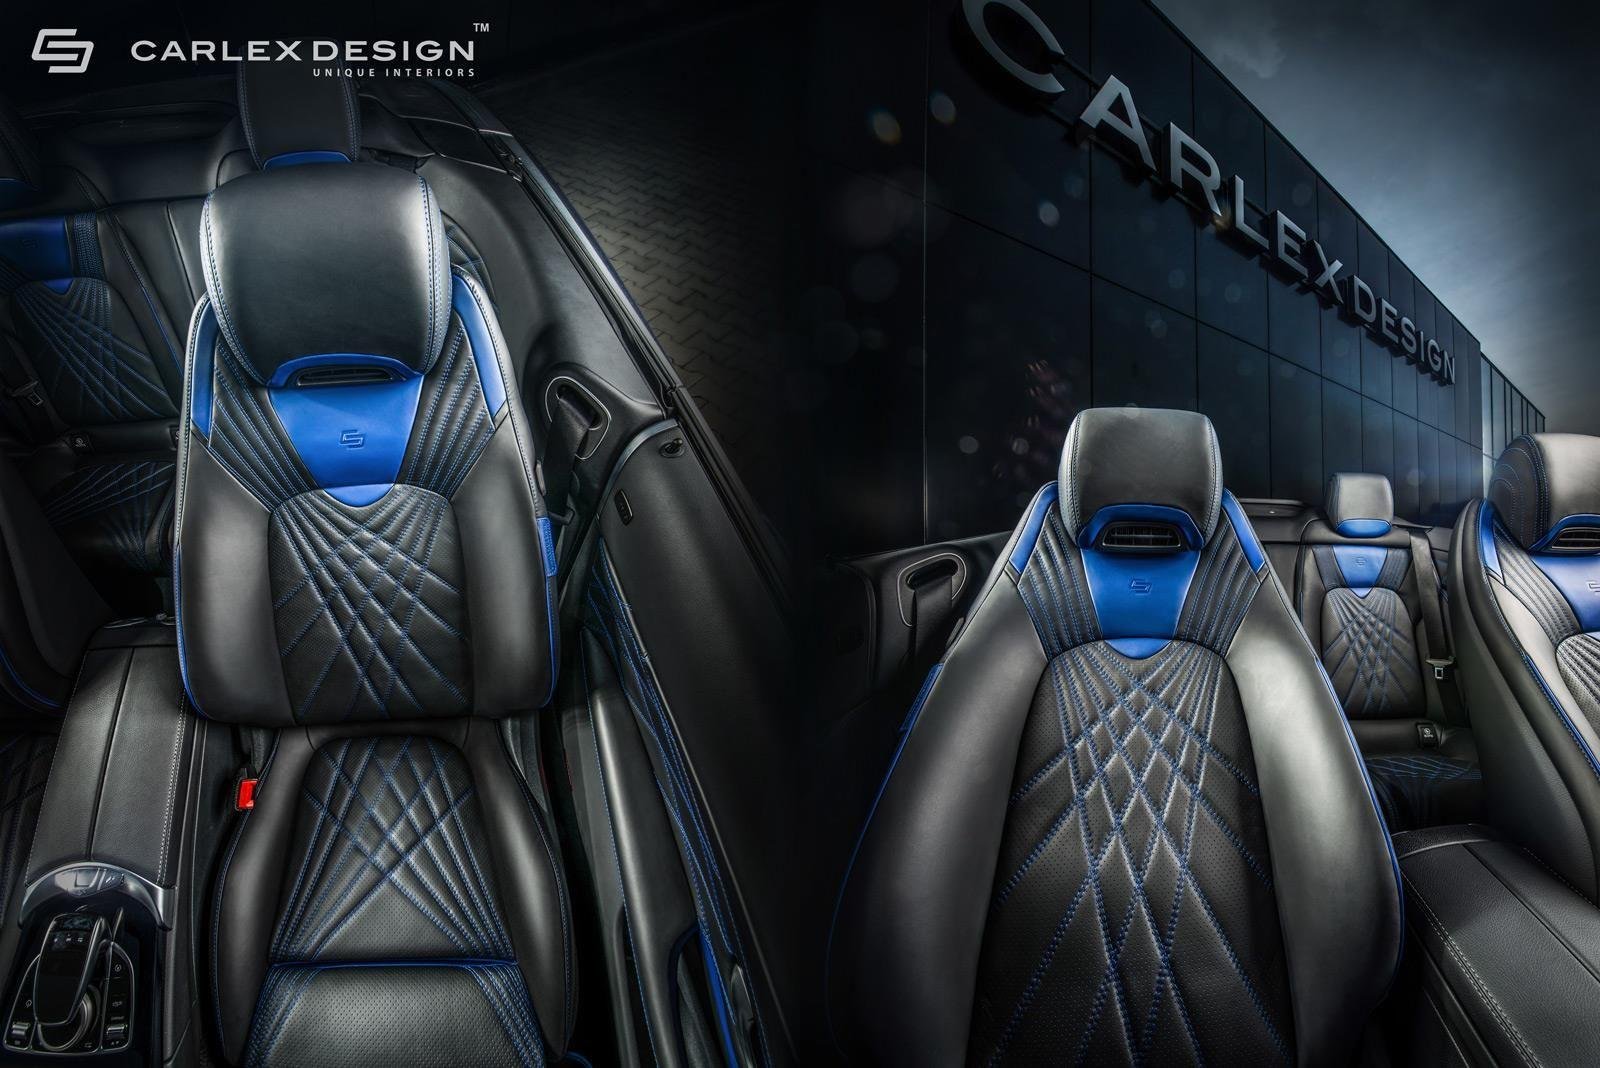 Mercedes C-Class Cabrio By Carlex Design (5)